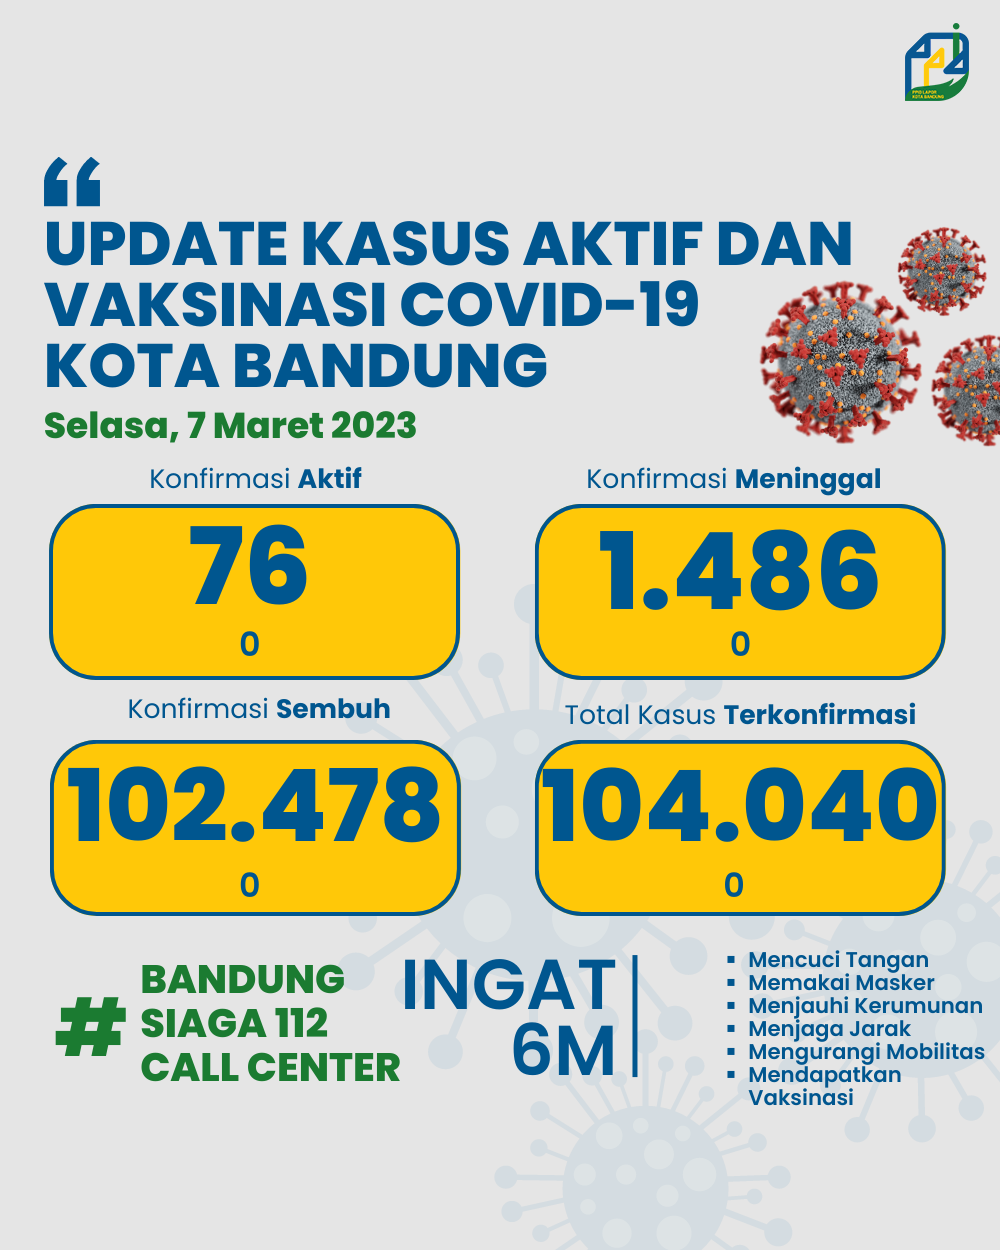 UPDATE STATISTIK COVID-19 DI KOTA BANDUNG PER TANGGAL 7 MARET 2023